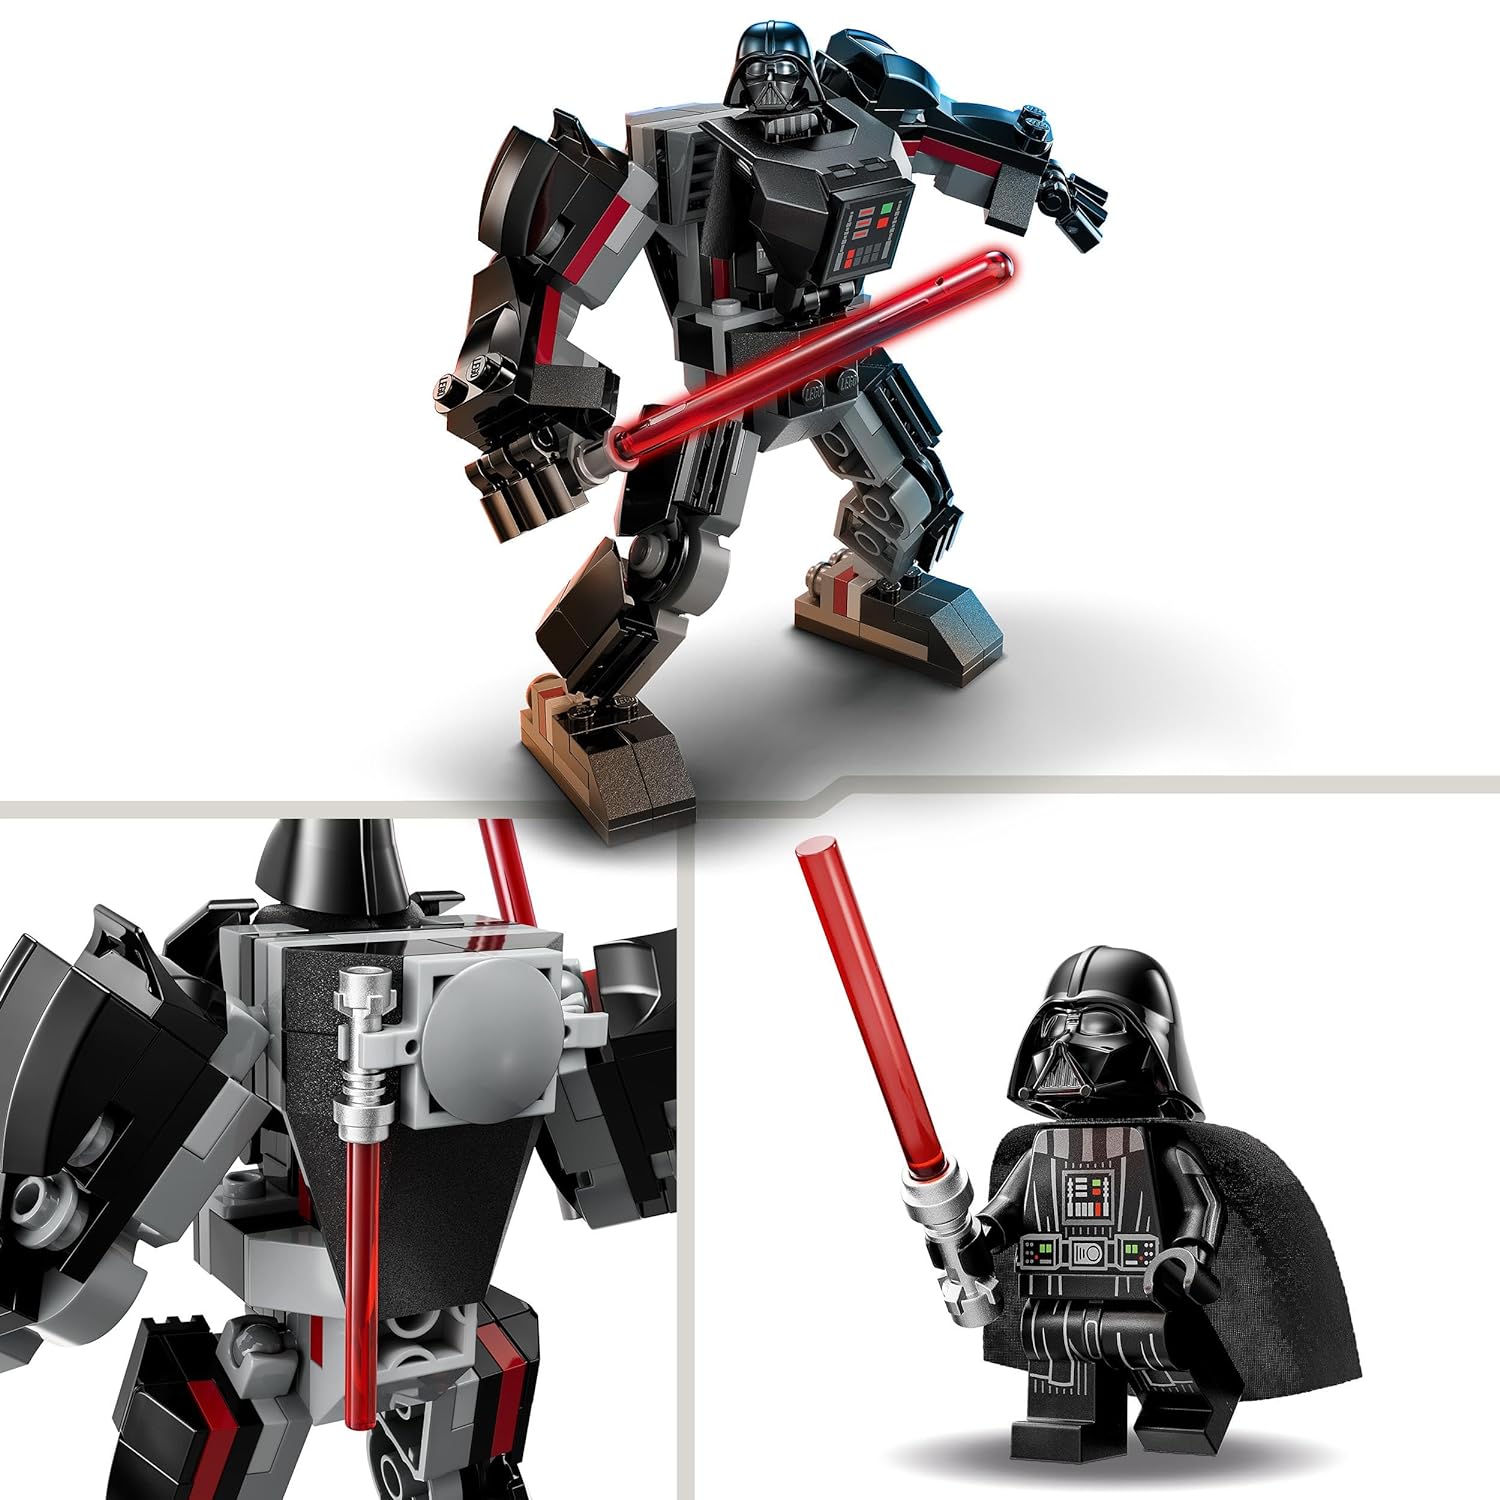 LEGO Star Wars Darth Vader Mech Building Kit for Ages 6+